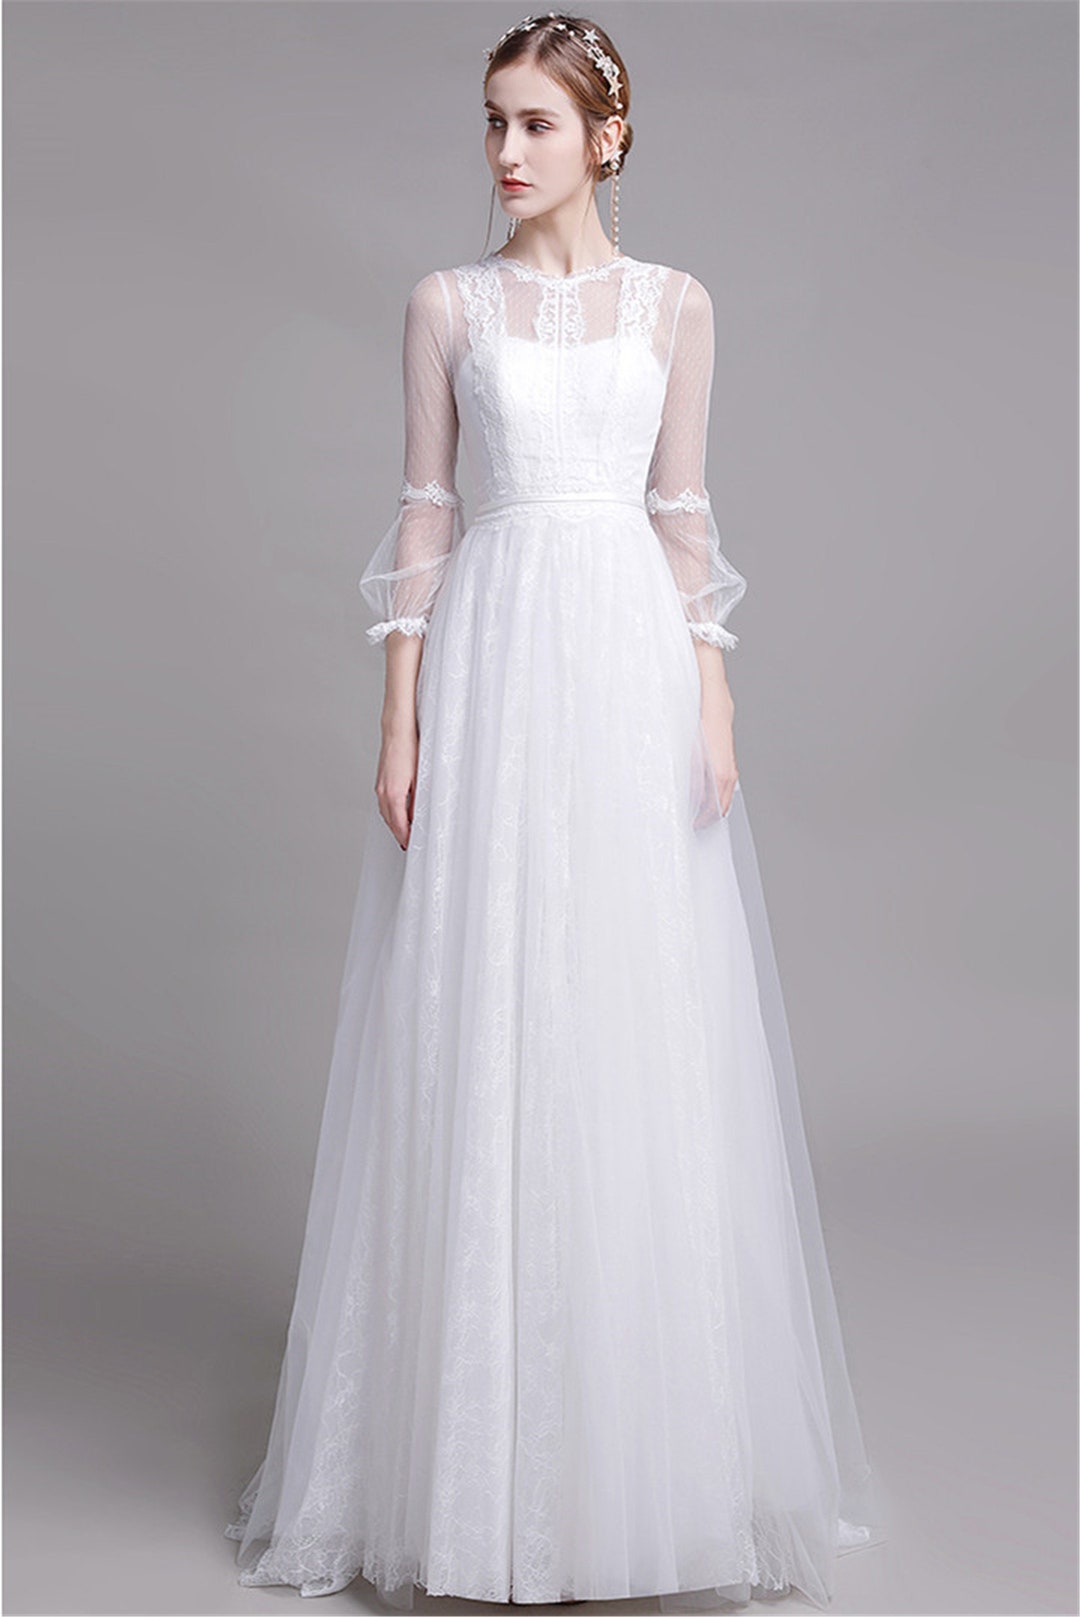 Long Bishop Wedding Dress Elegant White Tulle Bridal Dress - Etsy